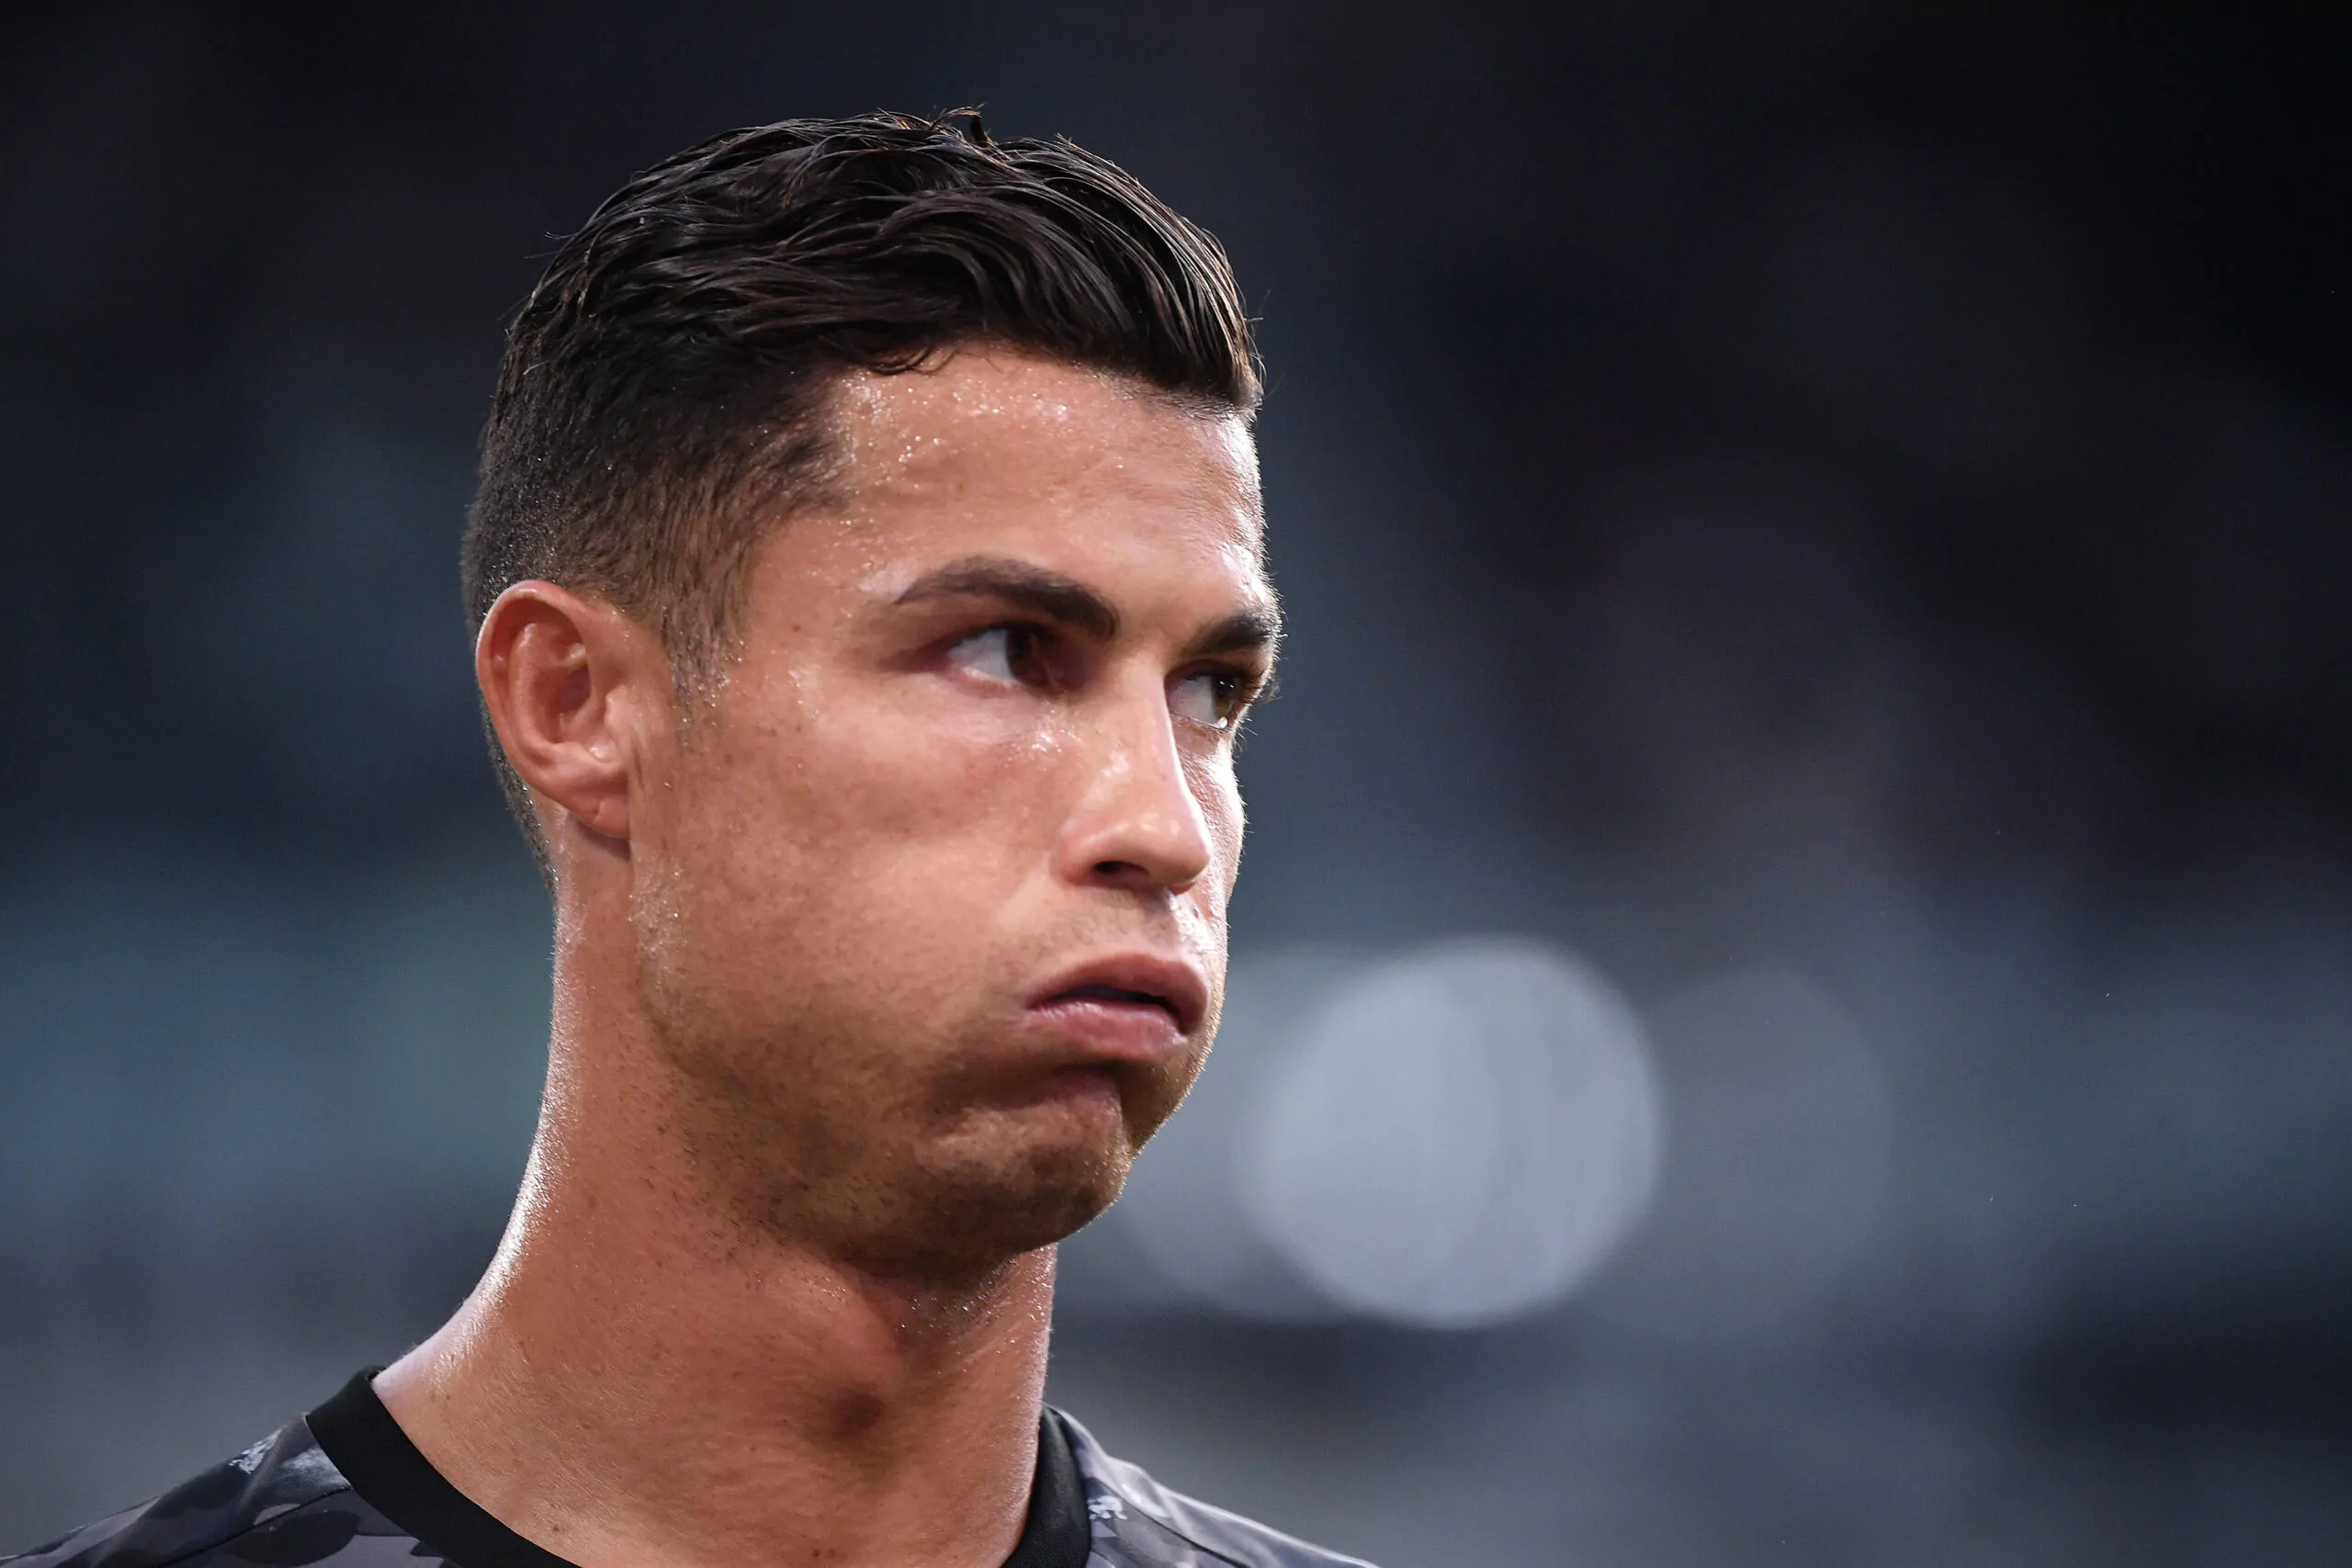 Ronaldo, arrivano le prime critiche: “Così non va bene”